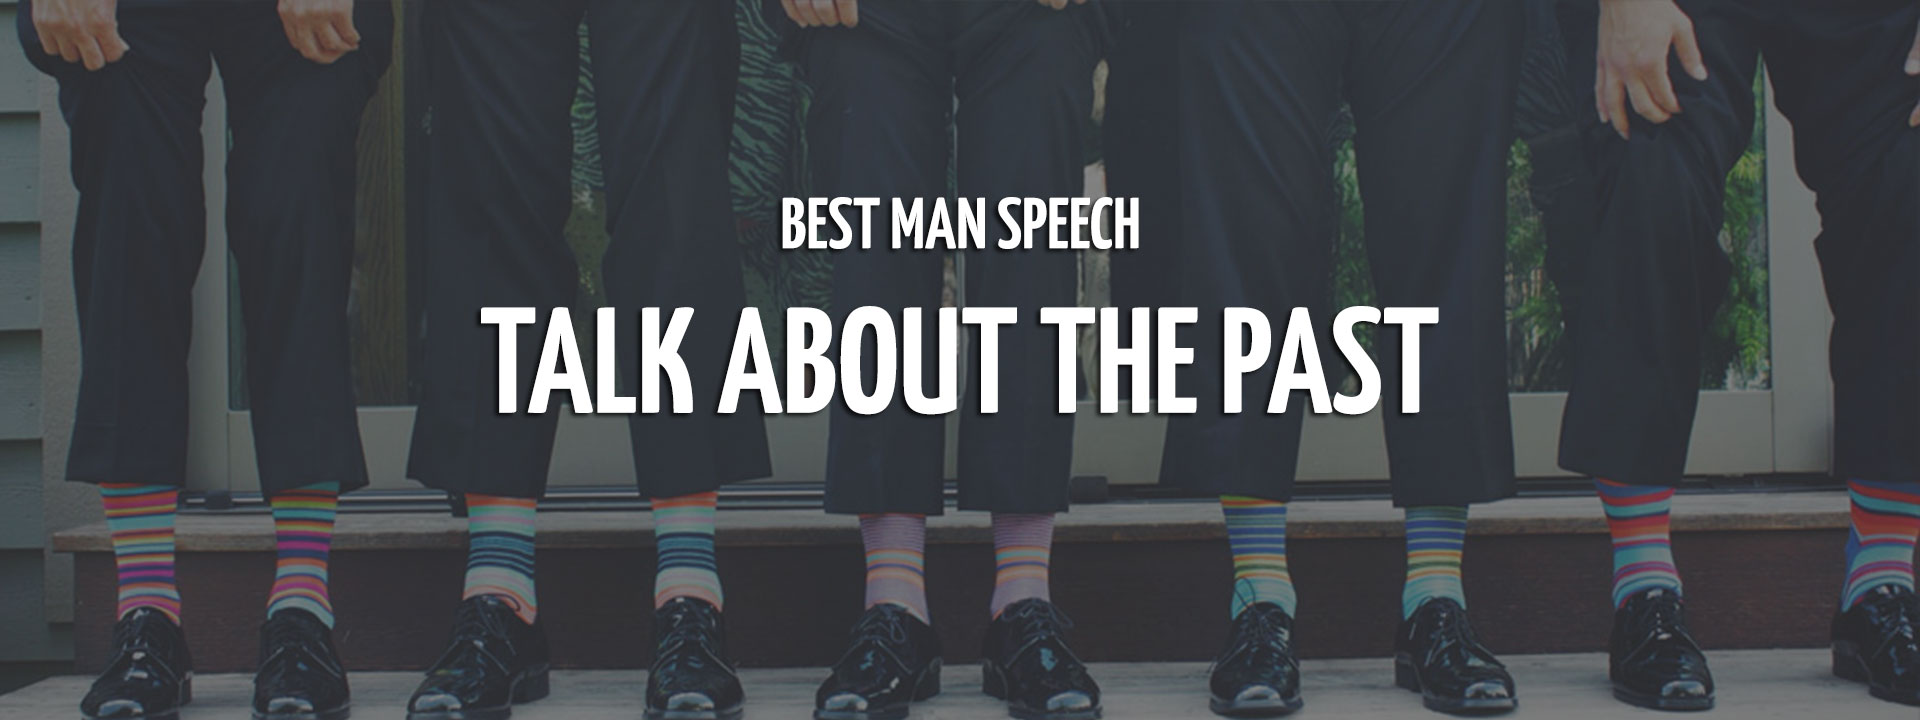 best man speech past